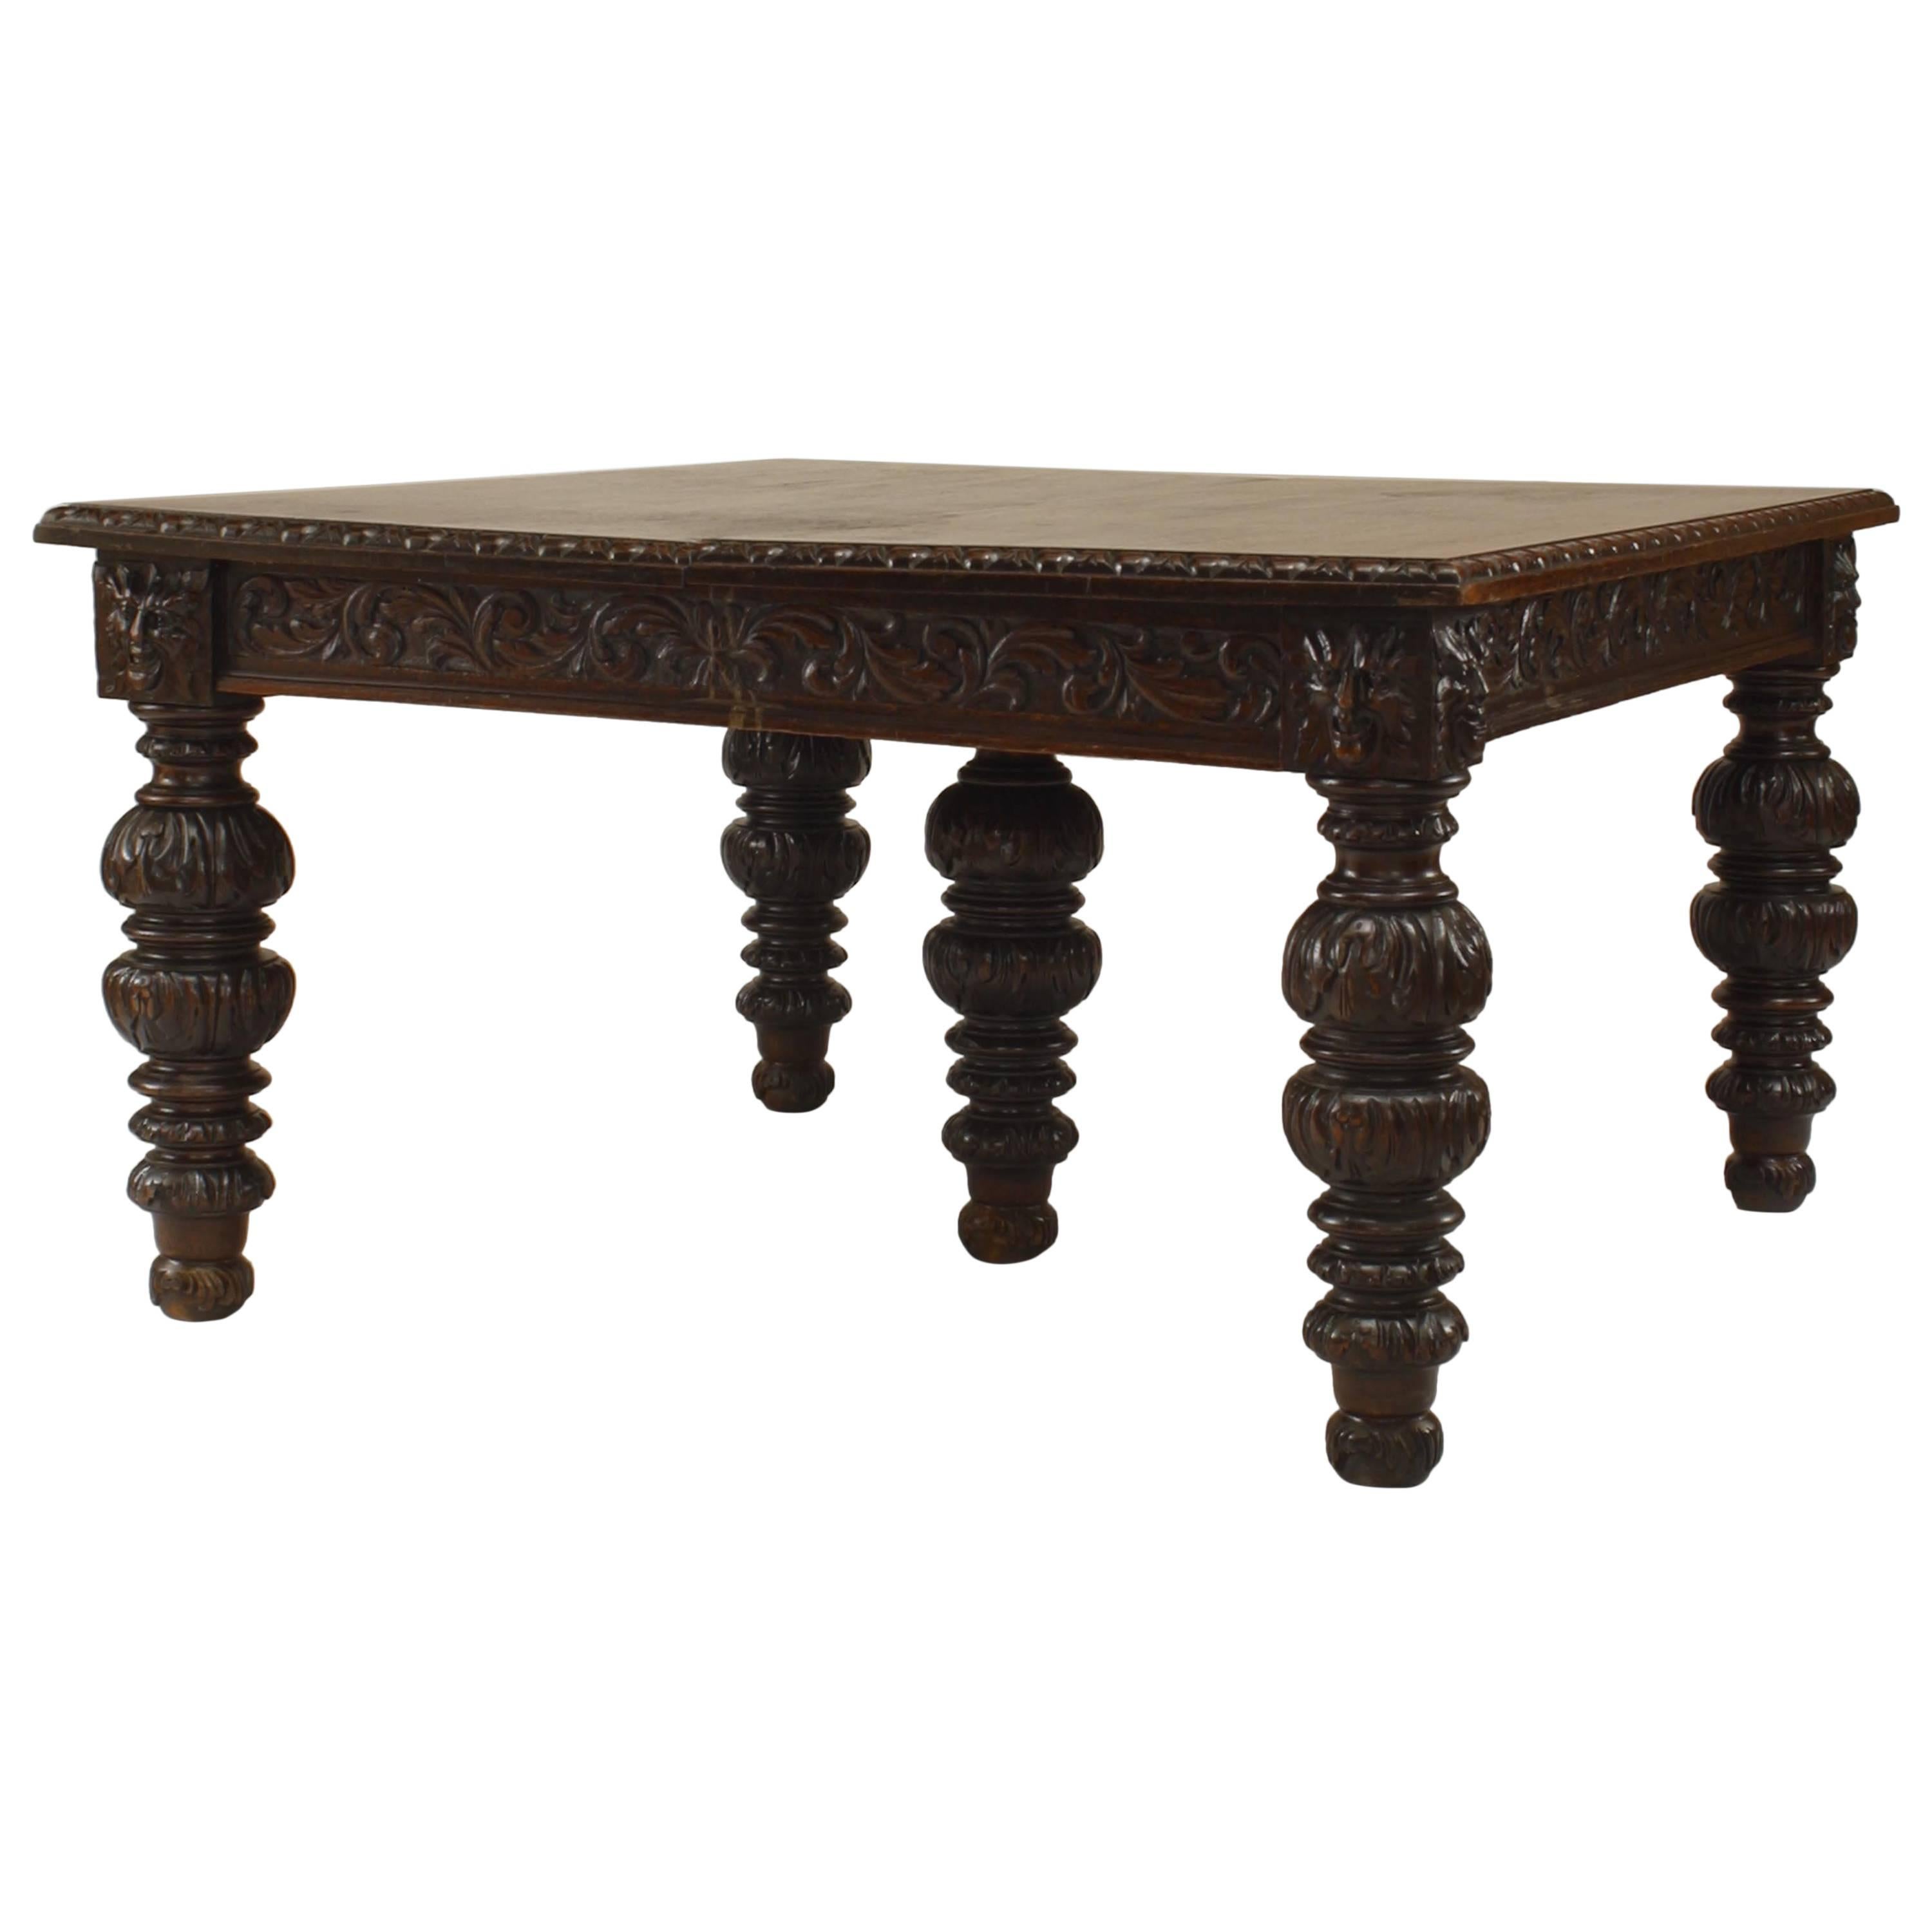 Englischer Esstisch aus Eichenholz im viktorianischen Renaissance-Stil